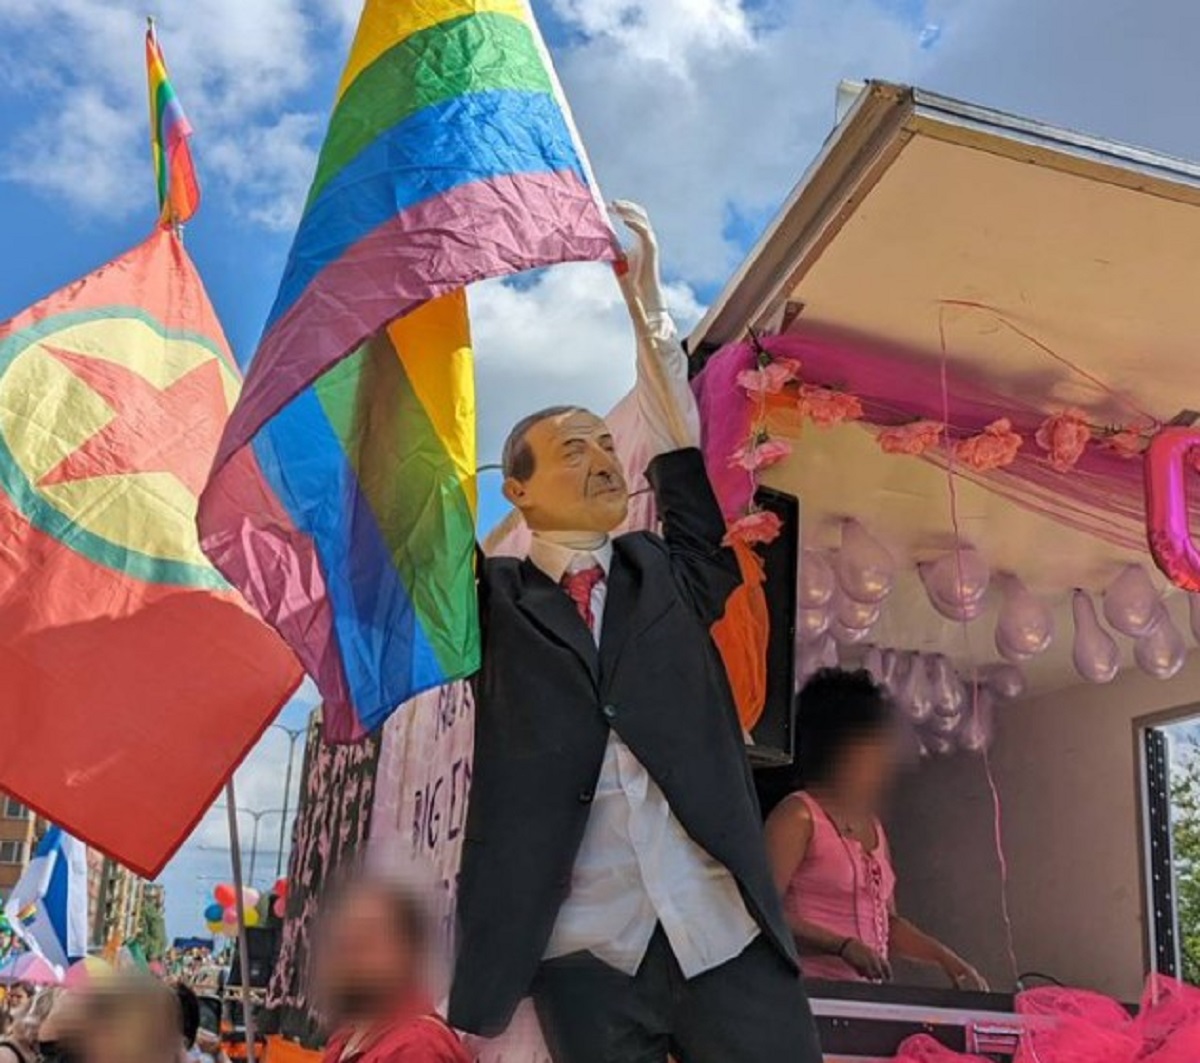 Τουρκία: Tο ομοίωμα Ερντογάν με σημαία των ΛΟΑΤΚΙ προκάλεσε αντιδράσεις – Νέος κύκλος αντιπαράθεσης με την Σουηδία